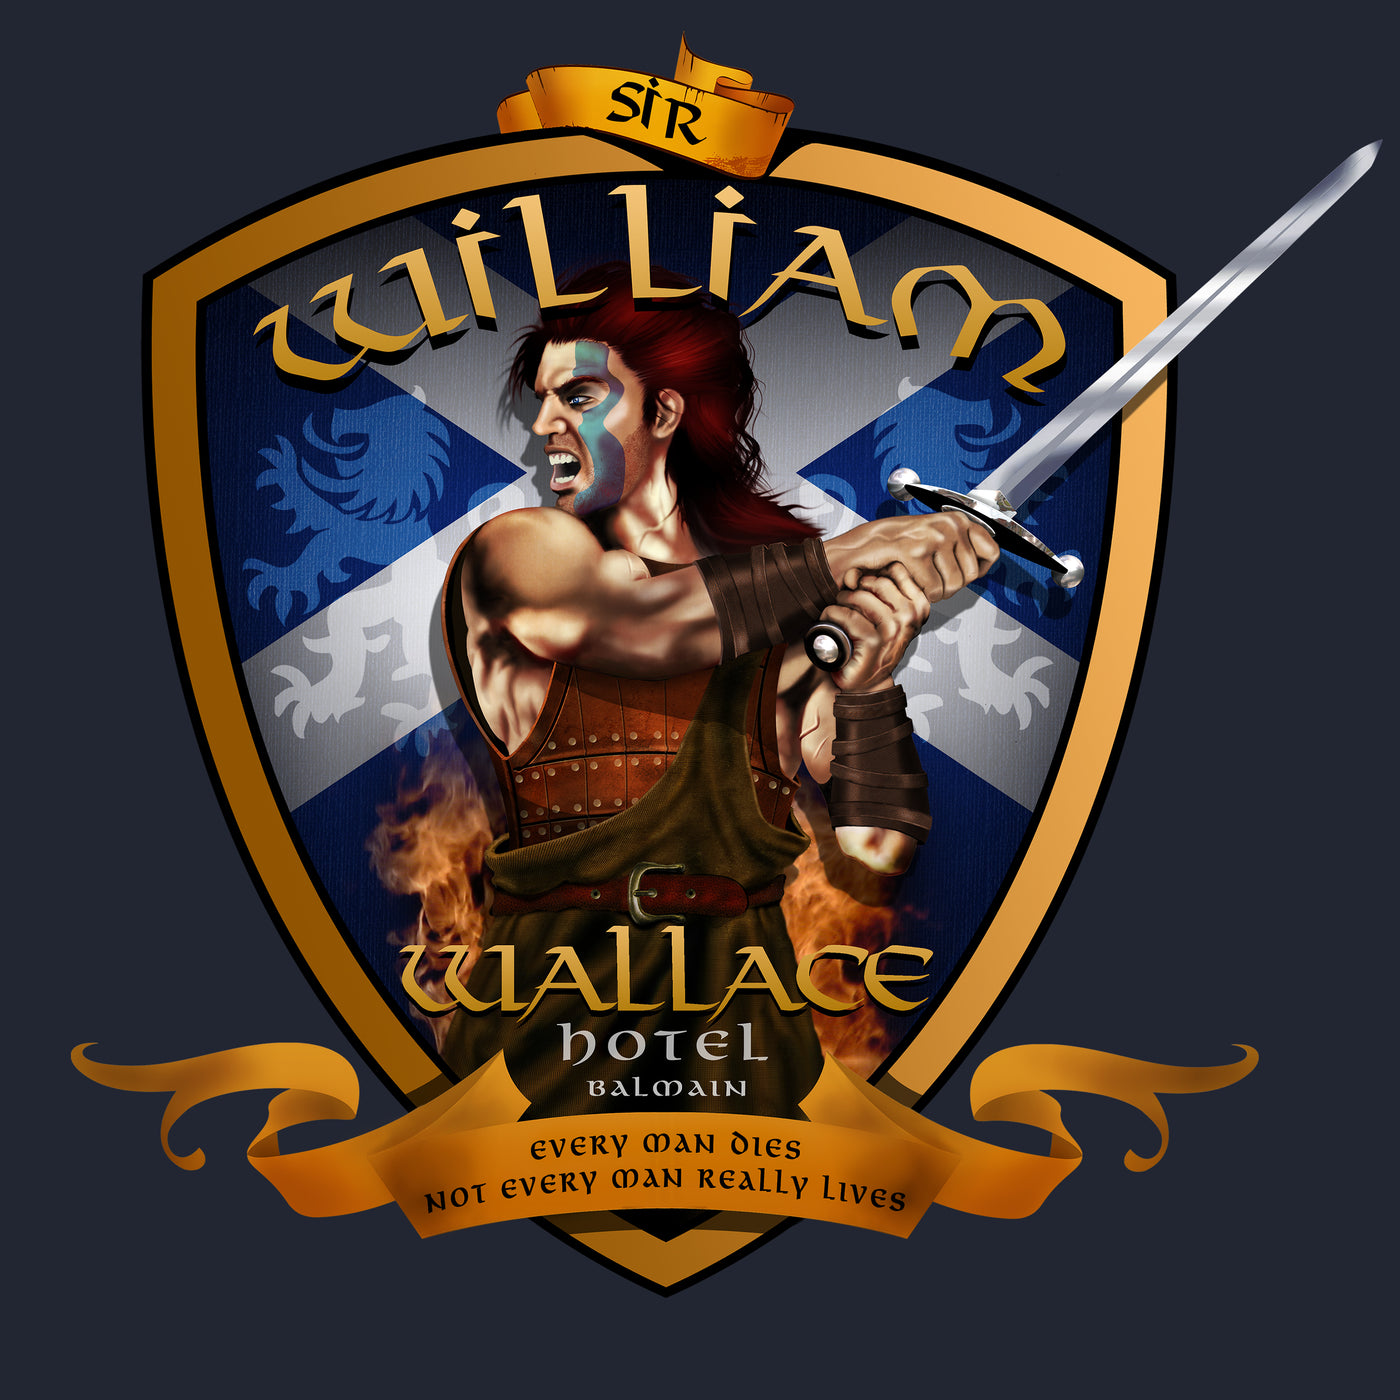 Sir William Wallace Hotel shield - Fem